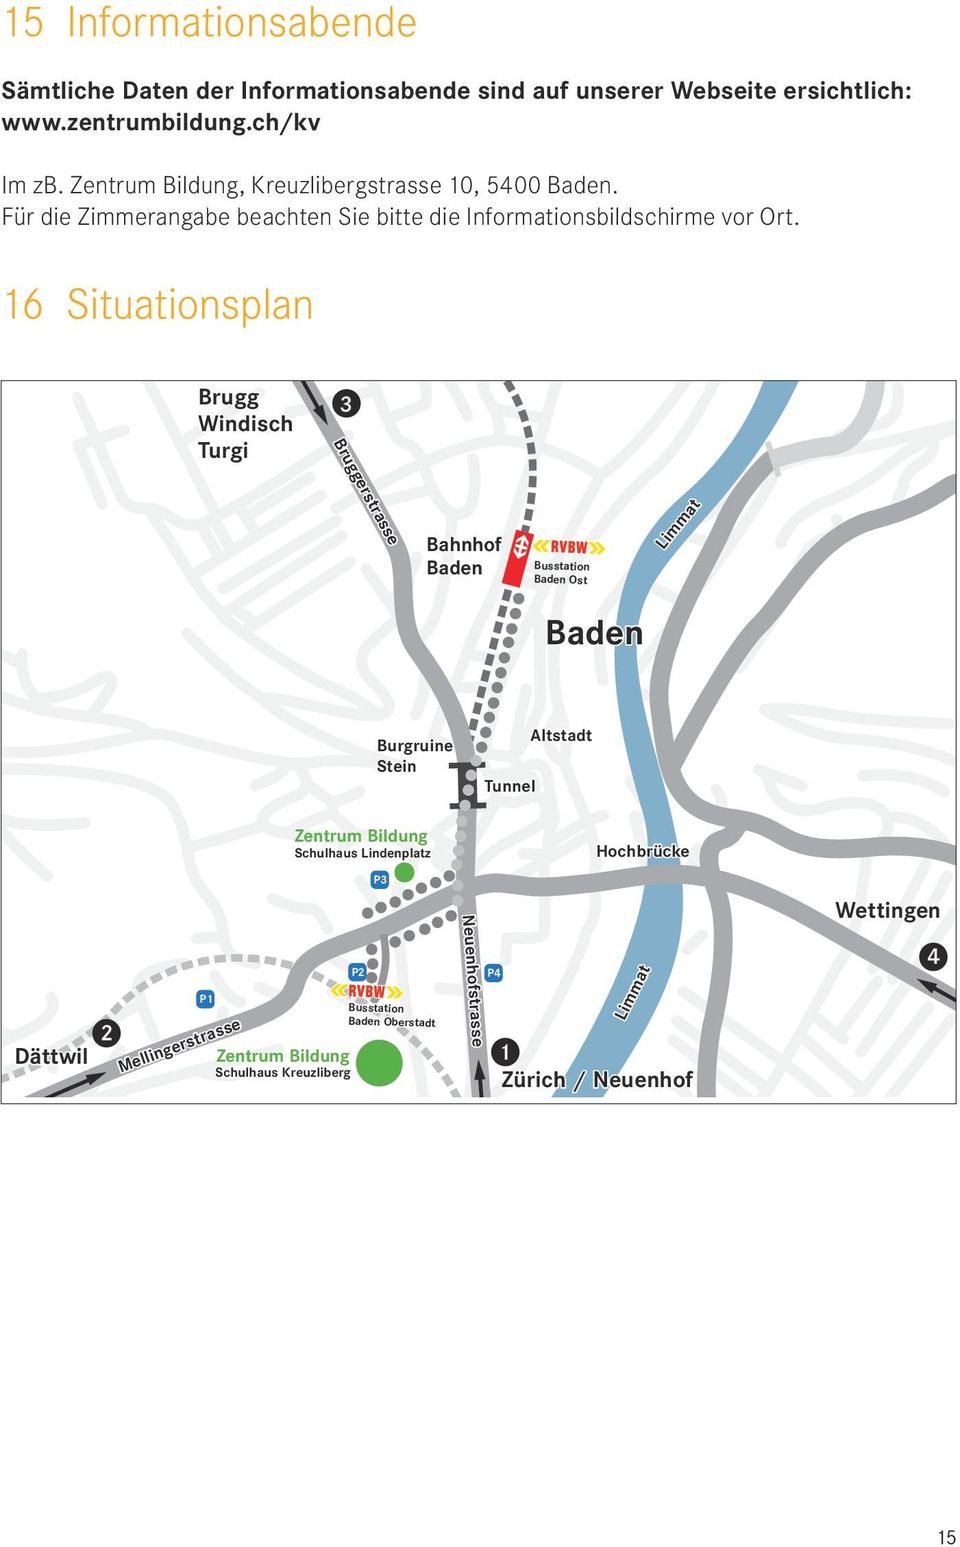 16 Situationsplan Brugg Windisch Turgi 3 Bruggerstrasse Bahnhof Baden Busstation Baden Ost Limmat Baden Burgruine Stein Altstadt Tunnel Zentrum Bildung